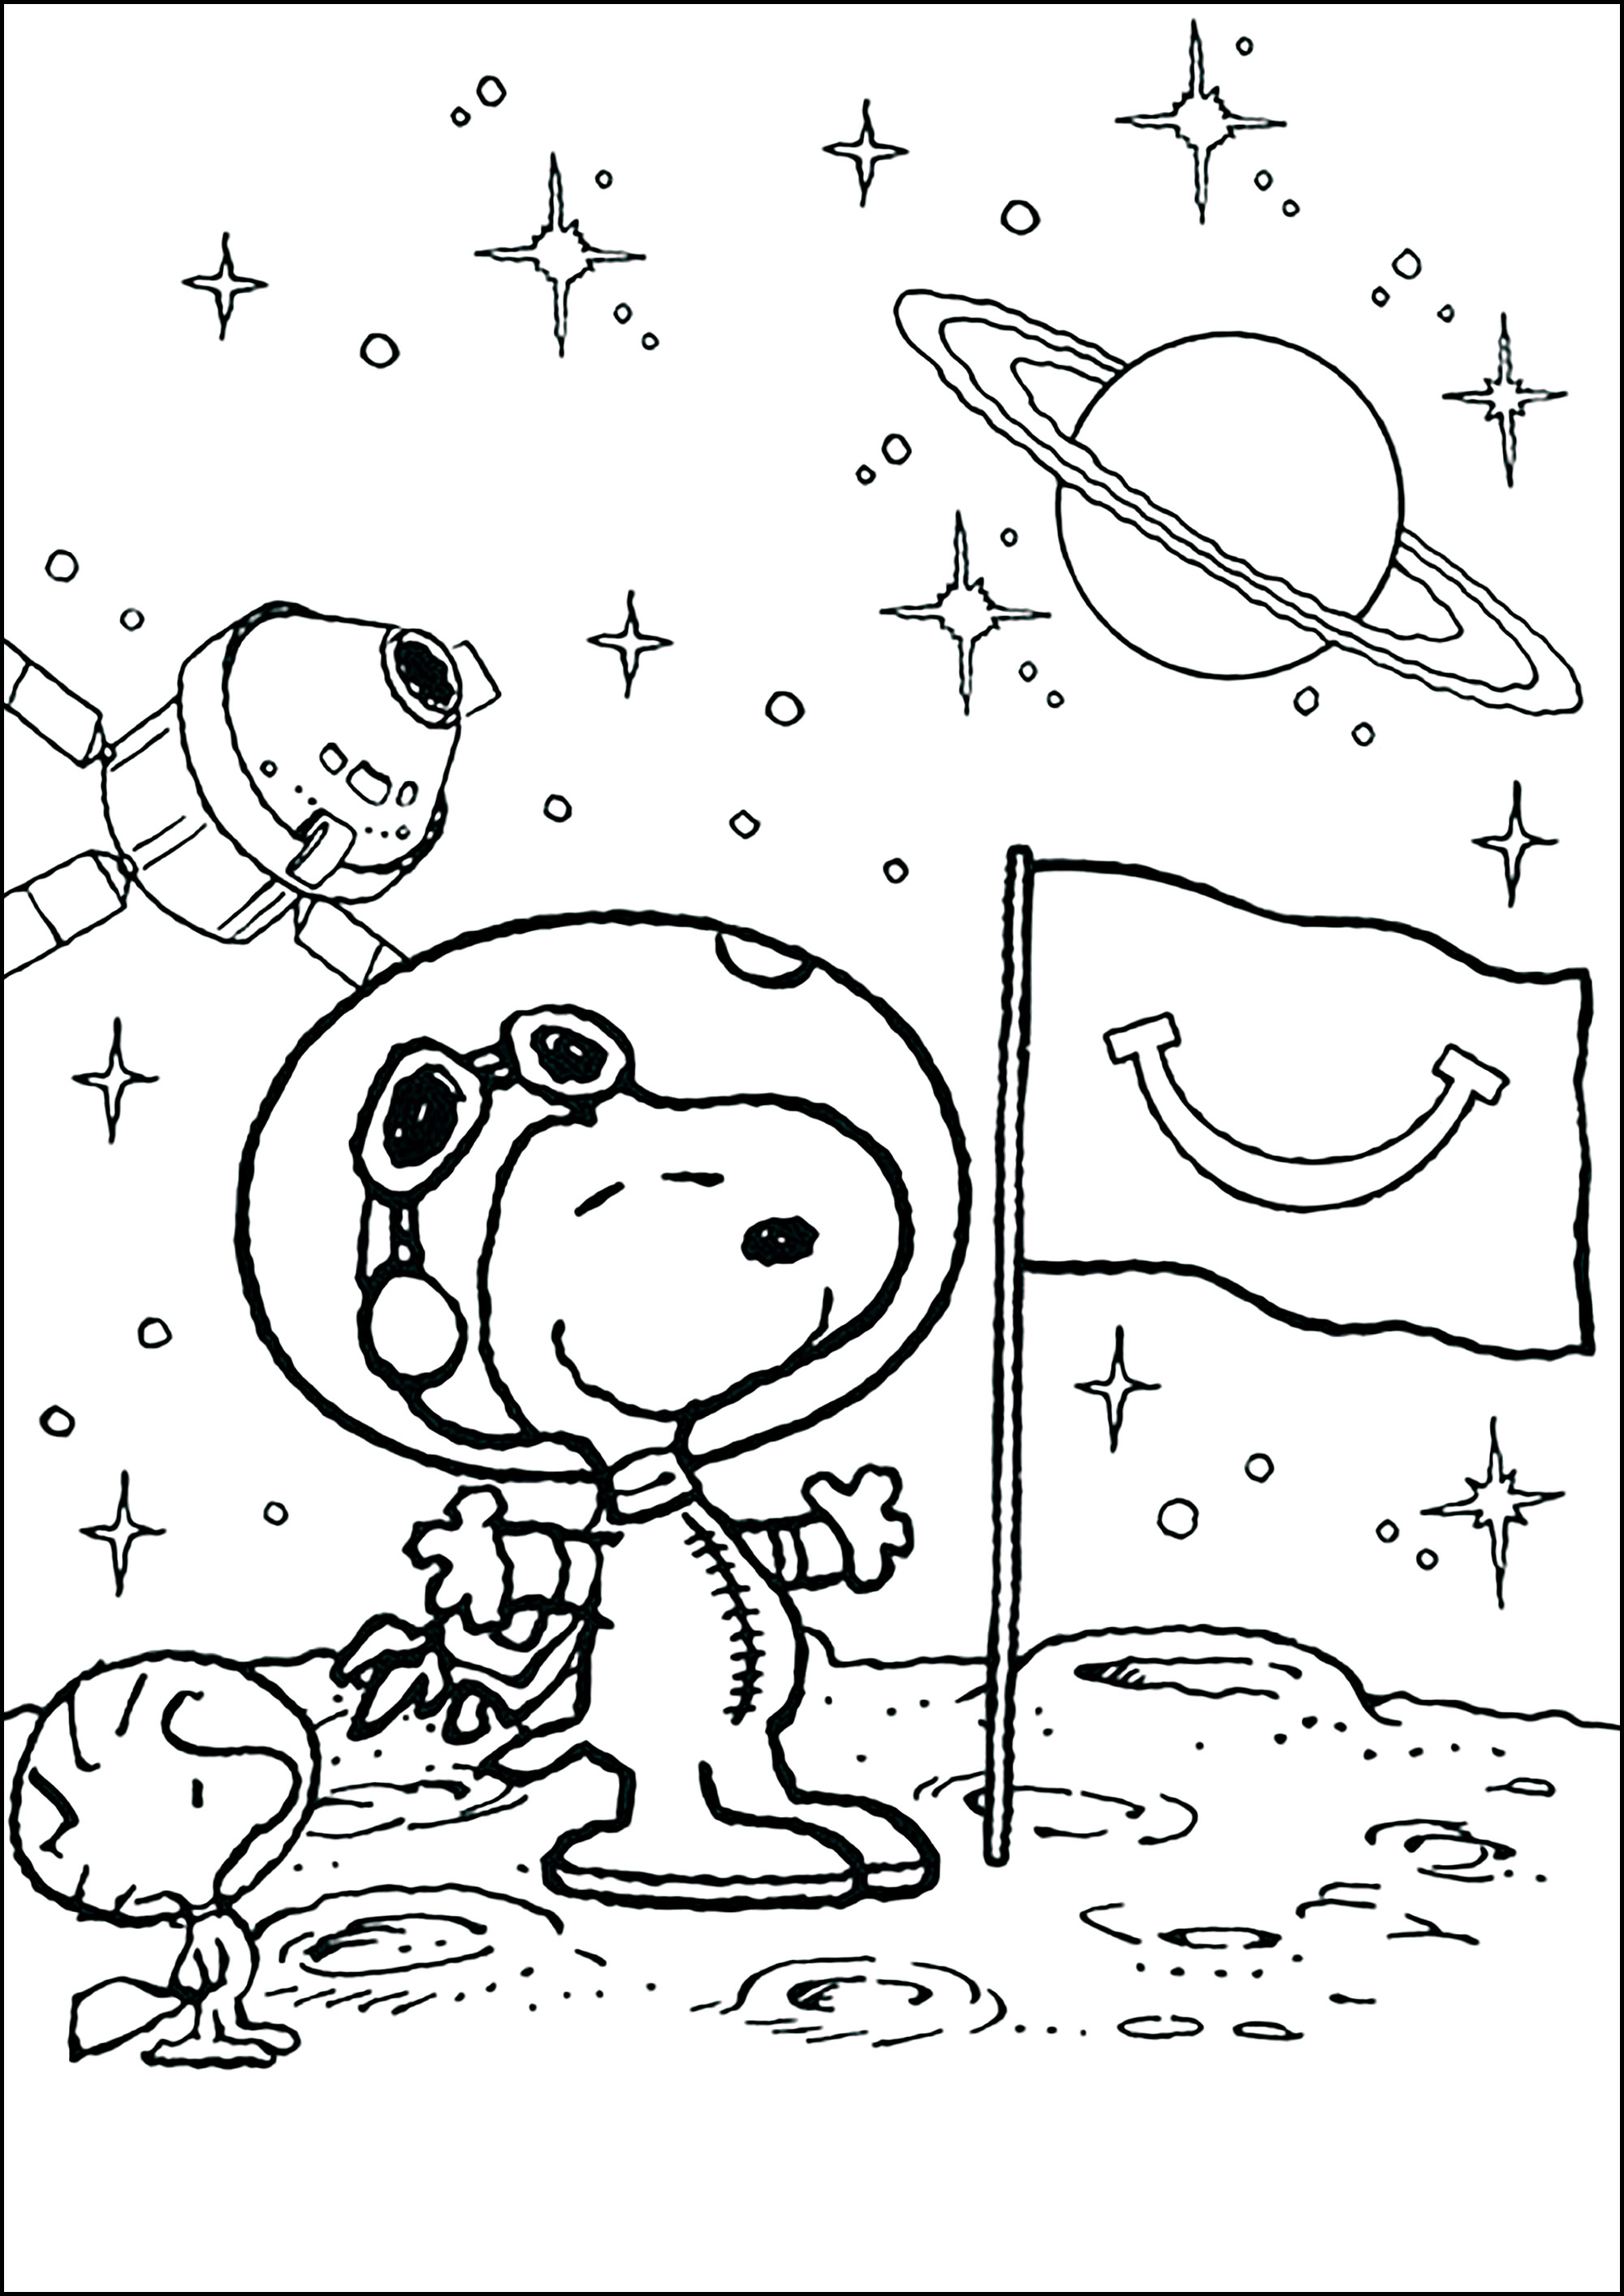 Snoopy el astronauta descubre la luna con Woodstock